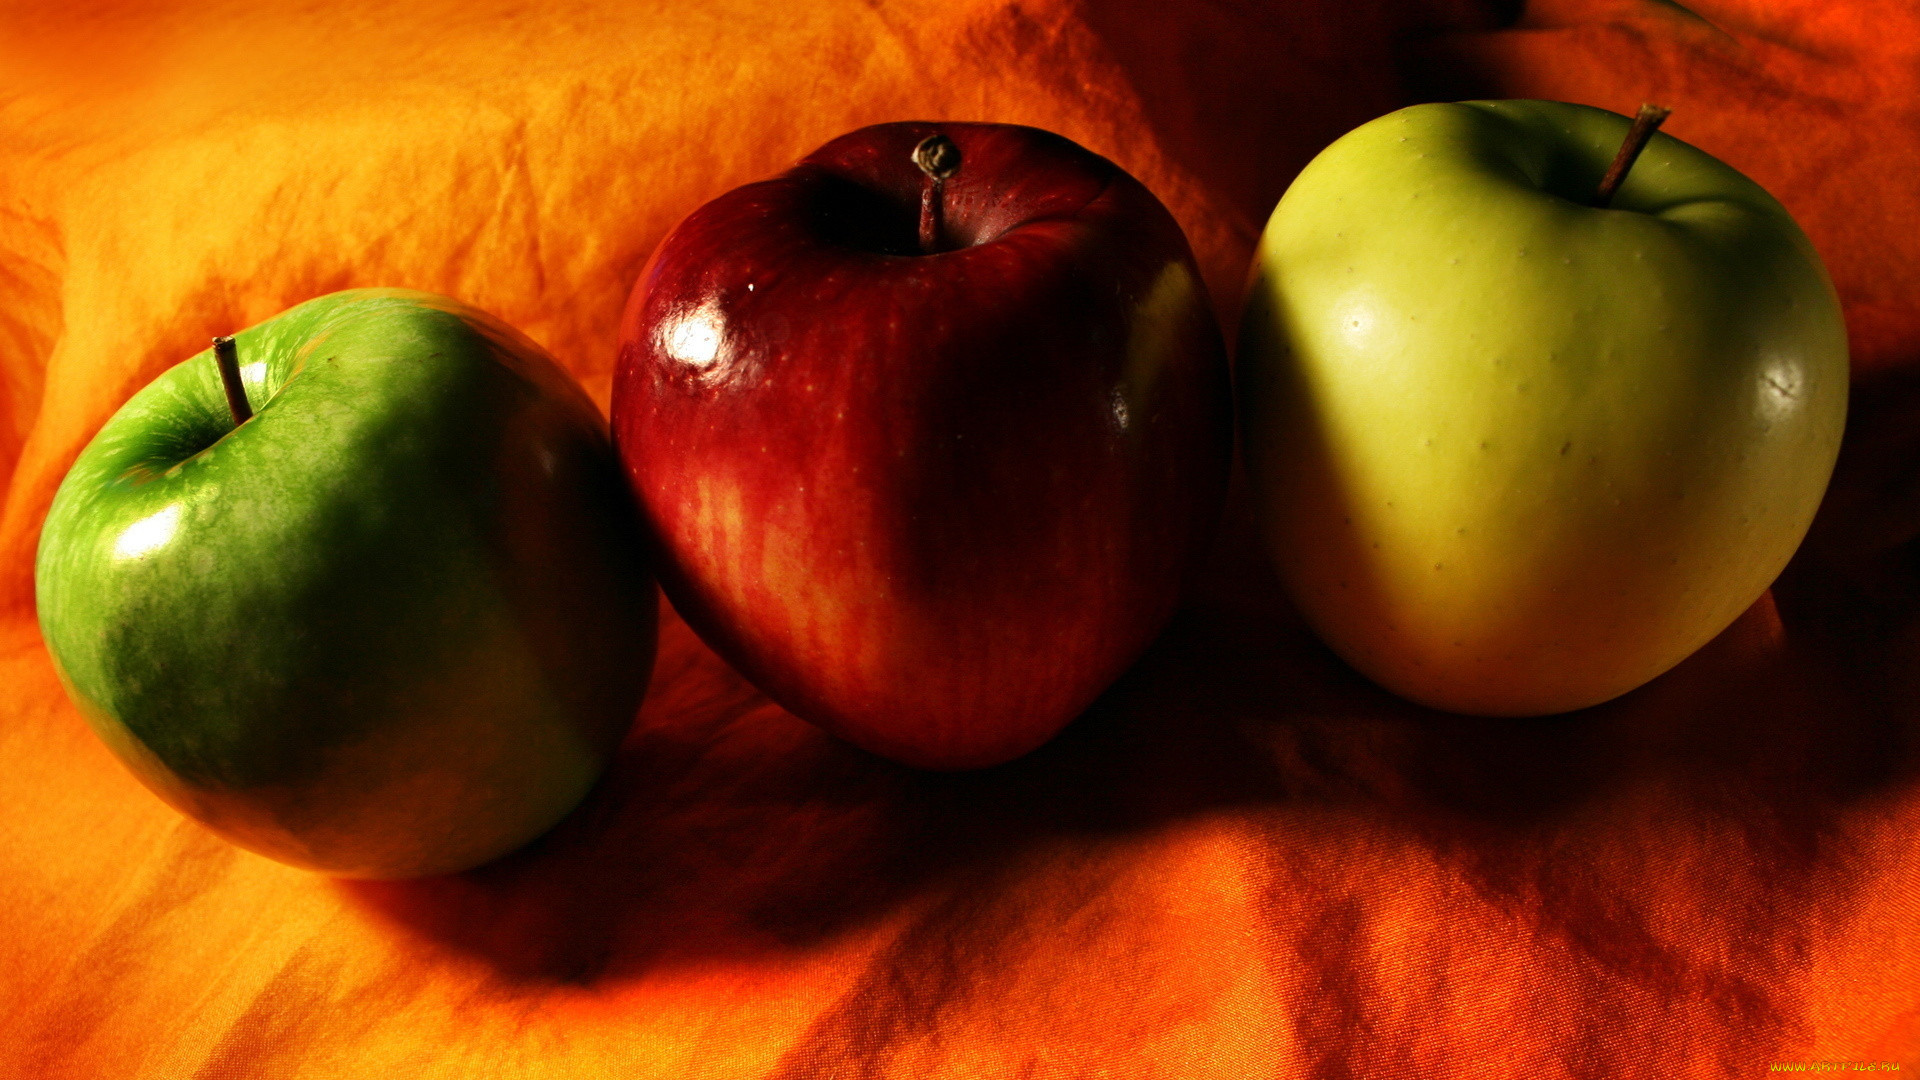 Хорошее яблоко на русском. Красивое яблоко. Яблоко на столе. Разные яблоки. Яблоки красные желтые зеленые.